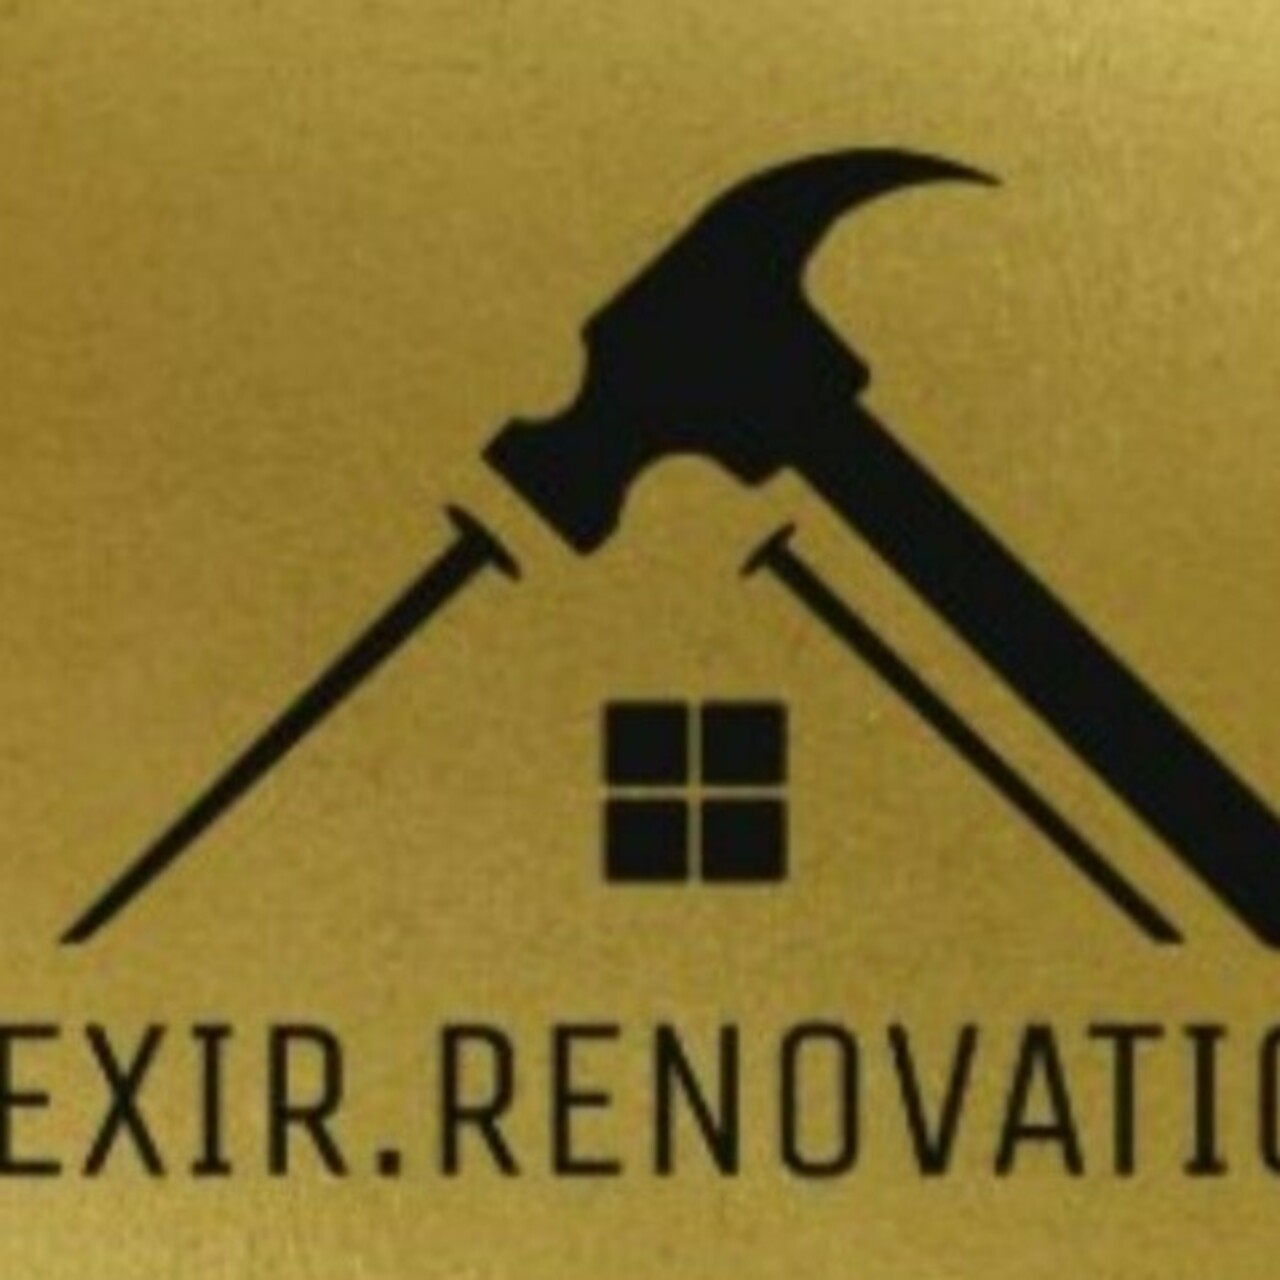 Ex Renovations's logo